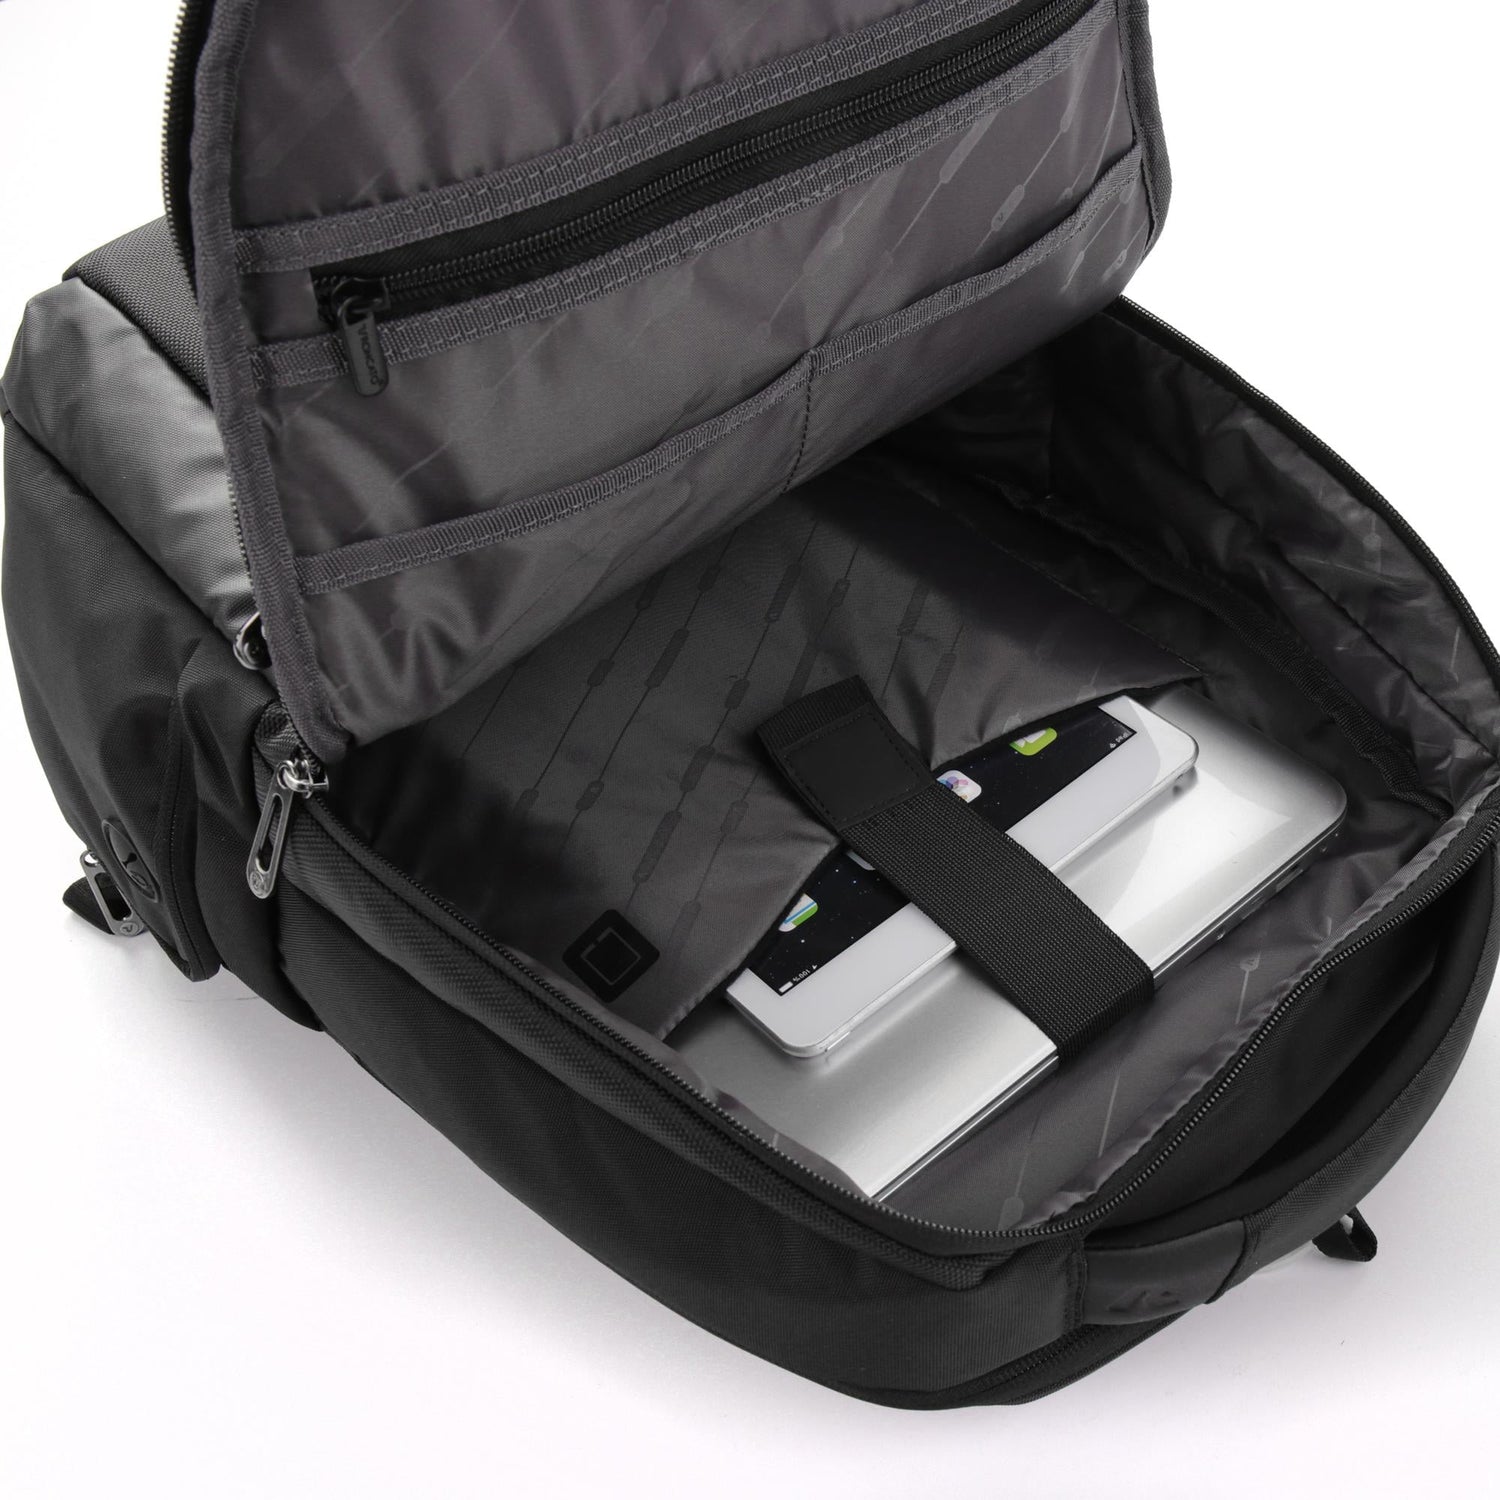 Zaino Roncato Desk - Porta PC 15,6 e Tablet 10 417181 – Scarpe Firmate